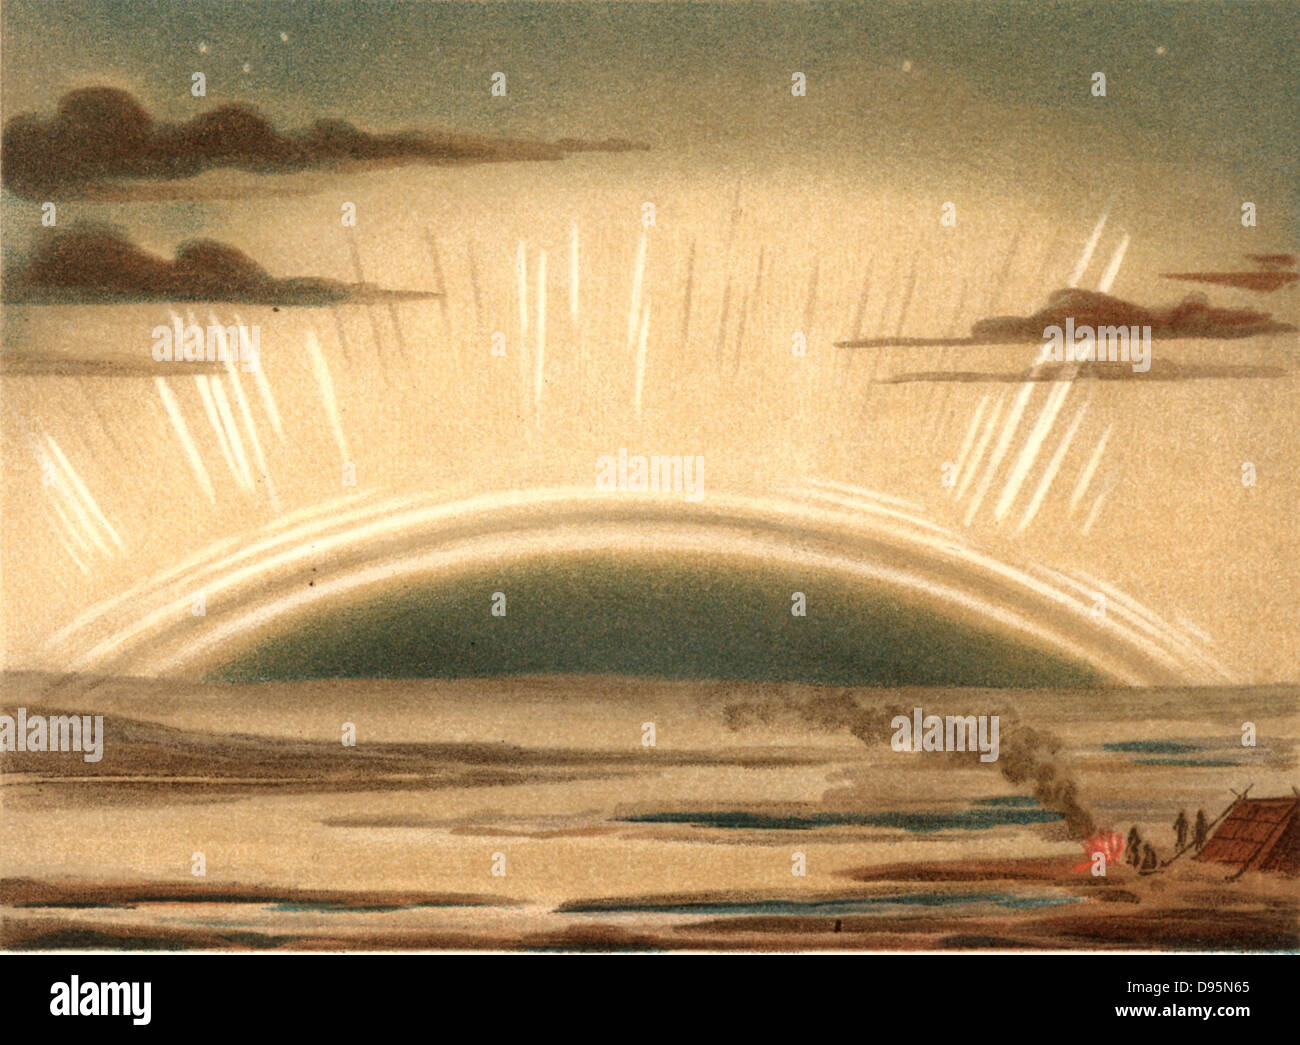 Aurora Boreale o luci del nord osservata dall'isola di Sky, Scozia, 11 settembre 1874. Causato da elevate velocità di particelle espulse dal sole, sono più comunemente osservati durante i periodi di massima le macchie solari. Da 'Die Naturkrafte' da M Wilhelm Meyer (Leipzig, 1903). Chromolithograph. Foto Stock